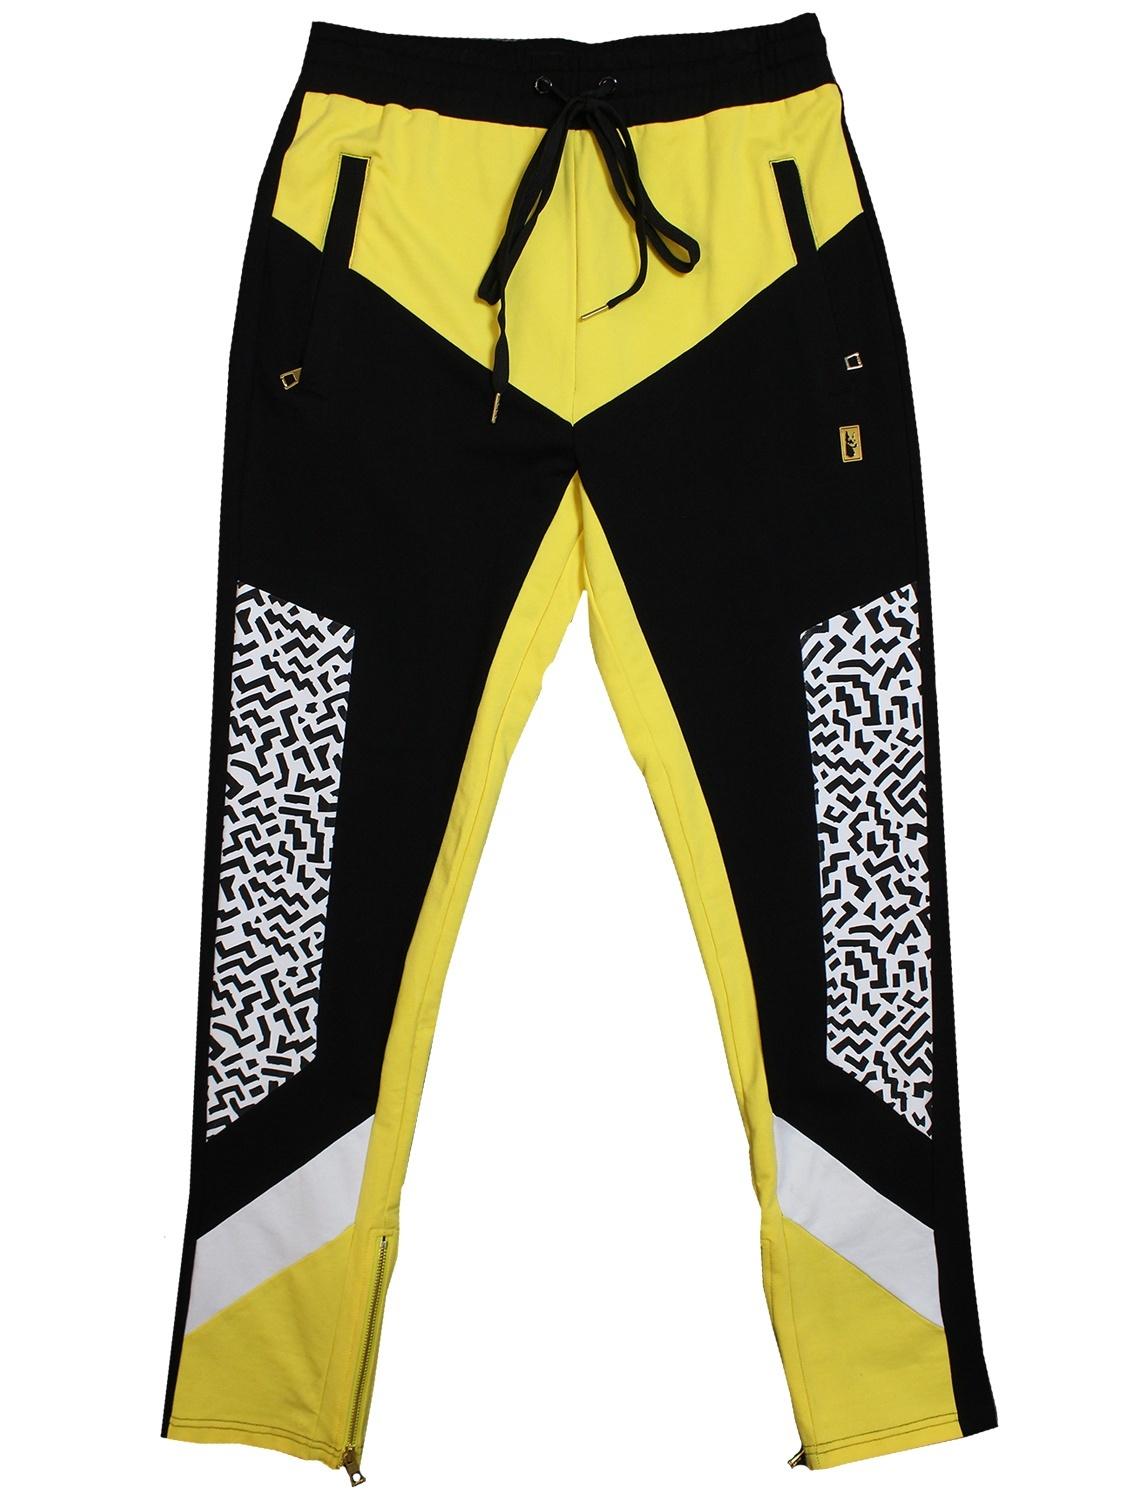 M555 Makobi Geo Urban Pants Set - Black/Yellow